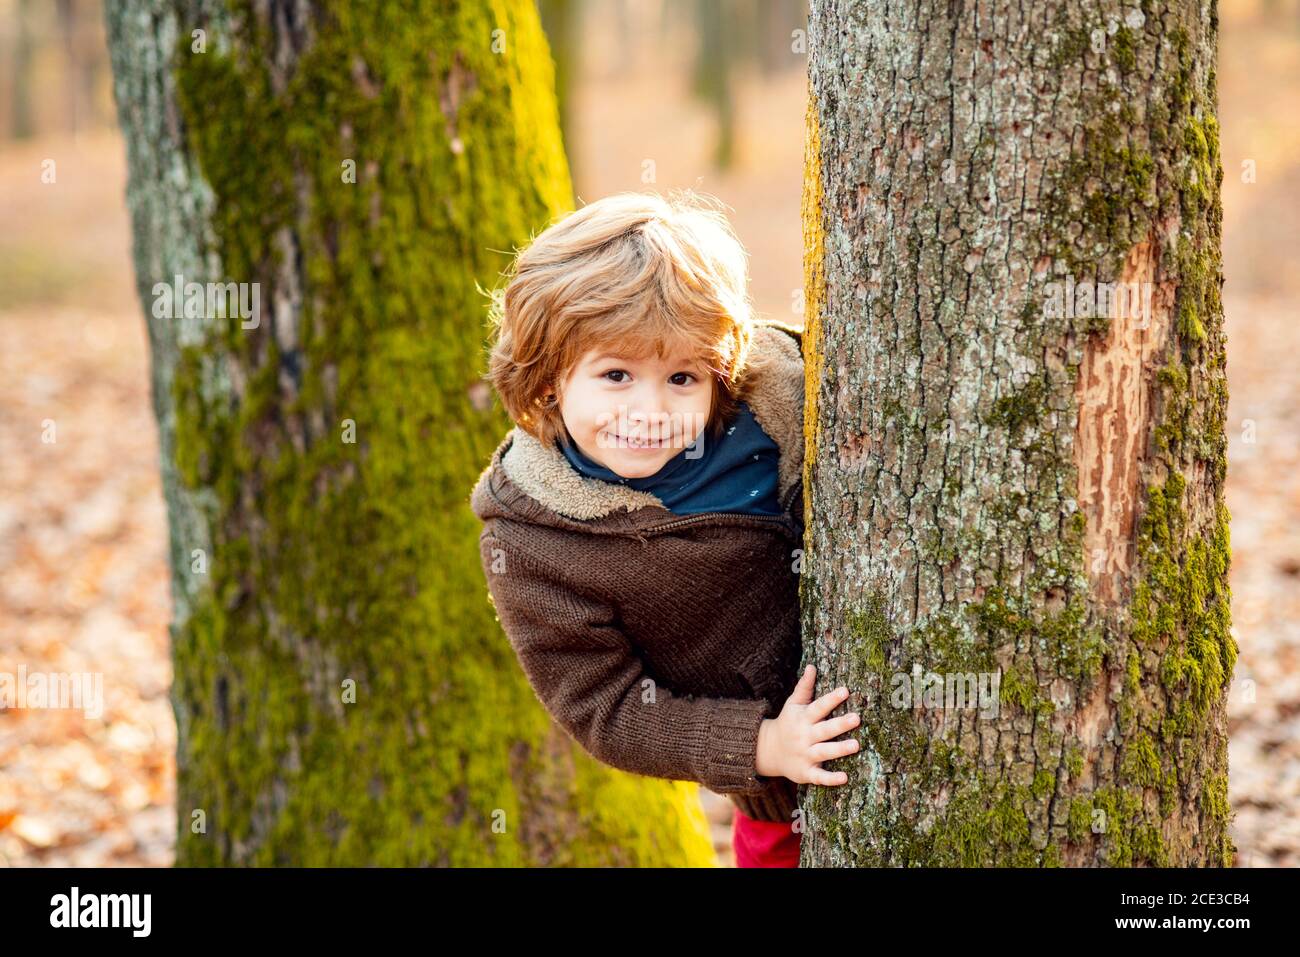 Outdoor Herbst Kinderportrait. Niedlichen kleinen Jungen genießen Klettern auf Baum. Kind in Herbstkleidung Klettern lernen, Spaß im Wald oder Park Stockfoto